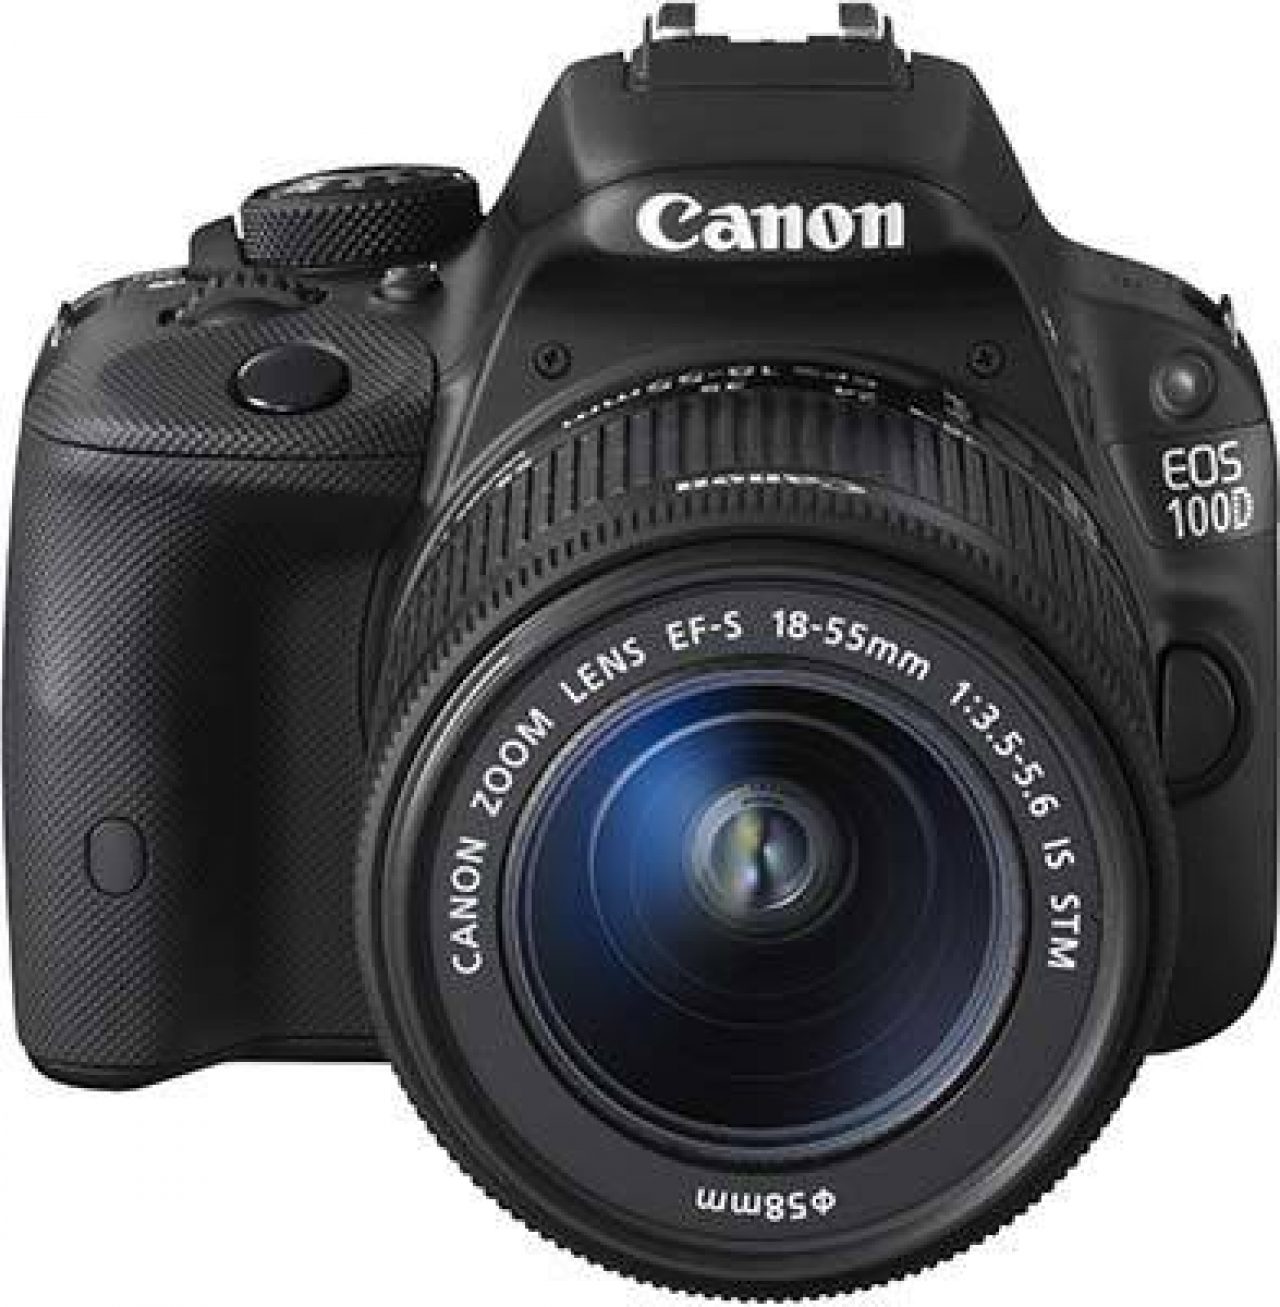 Canon EOS 100D | Photography Blog